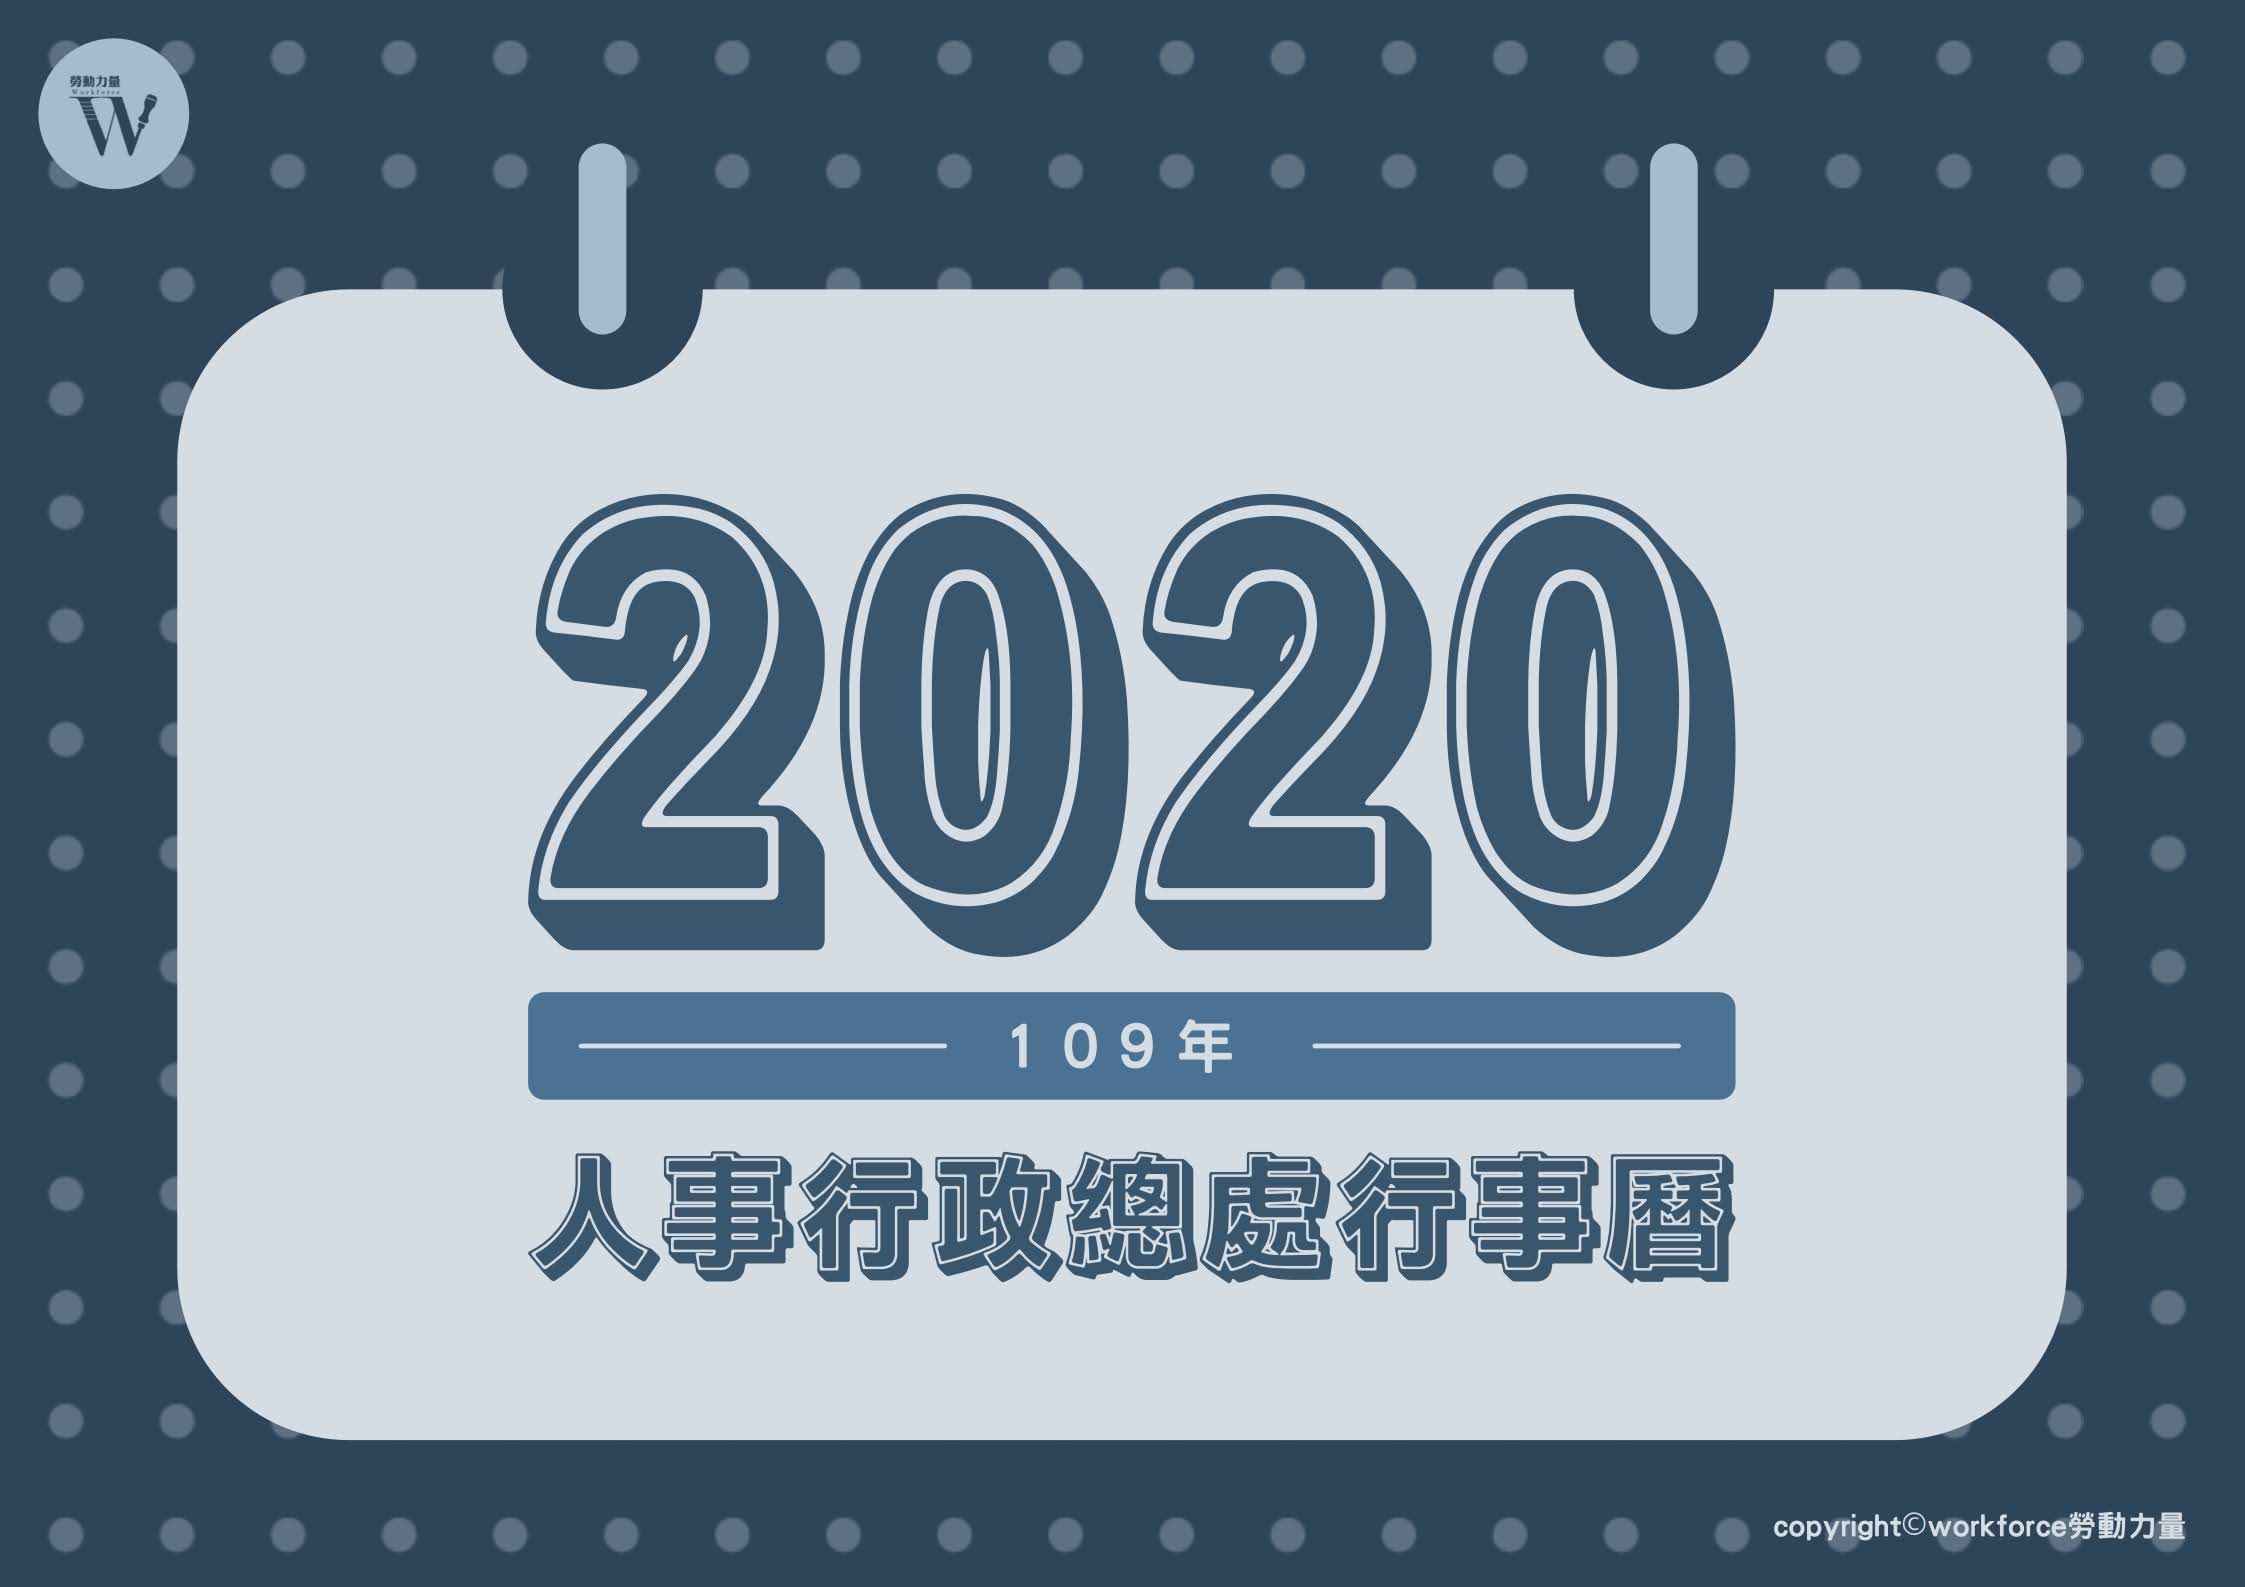 2020年（109年）人事行政總處行事曆